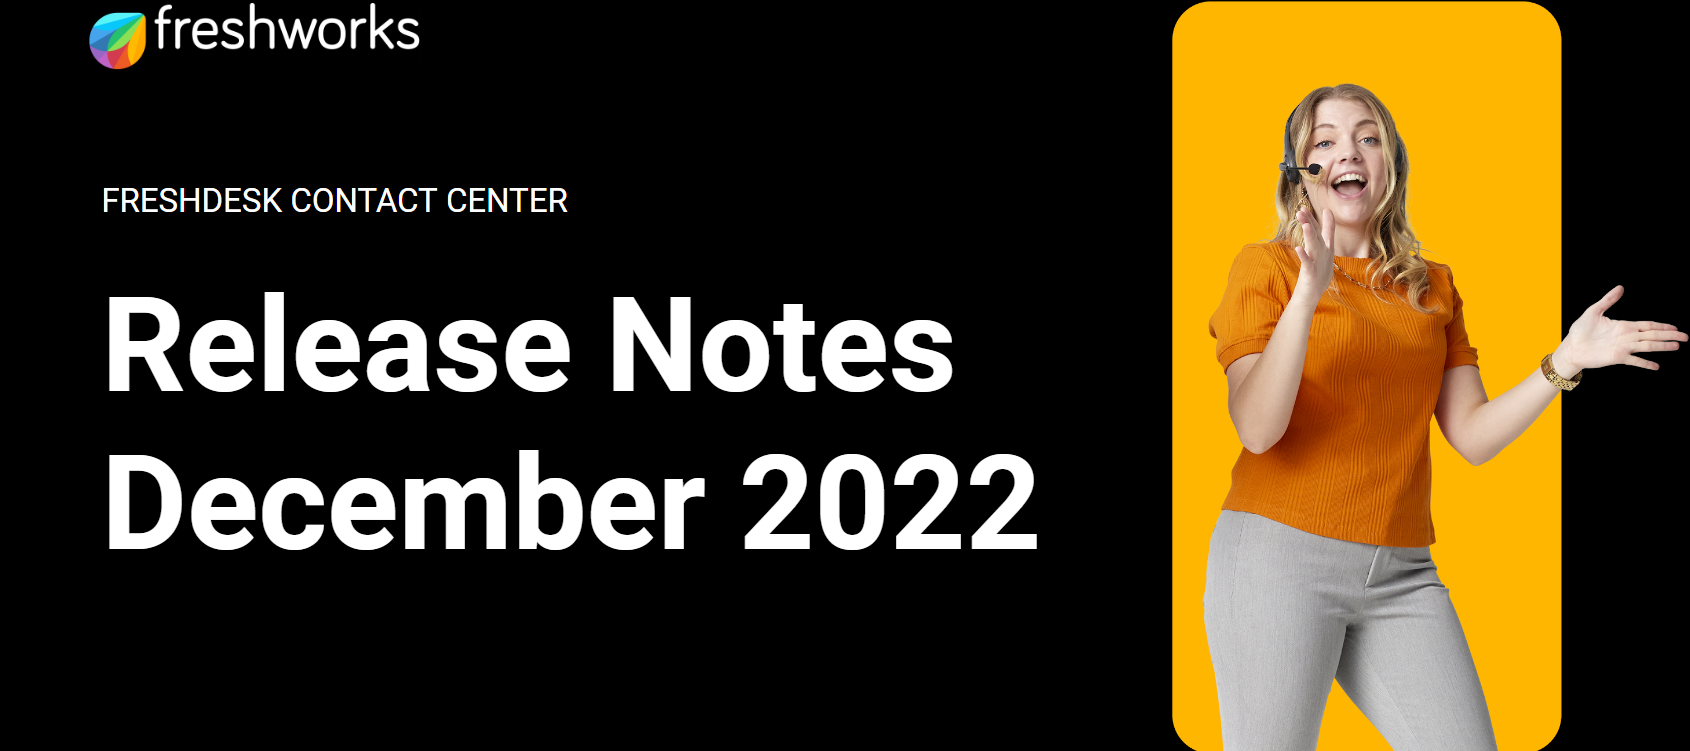 Freshdesk Contact Center Release Notes - December 2022